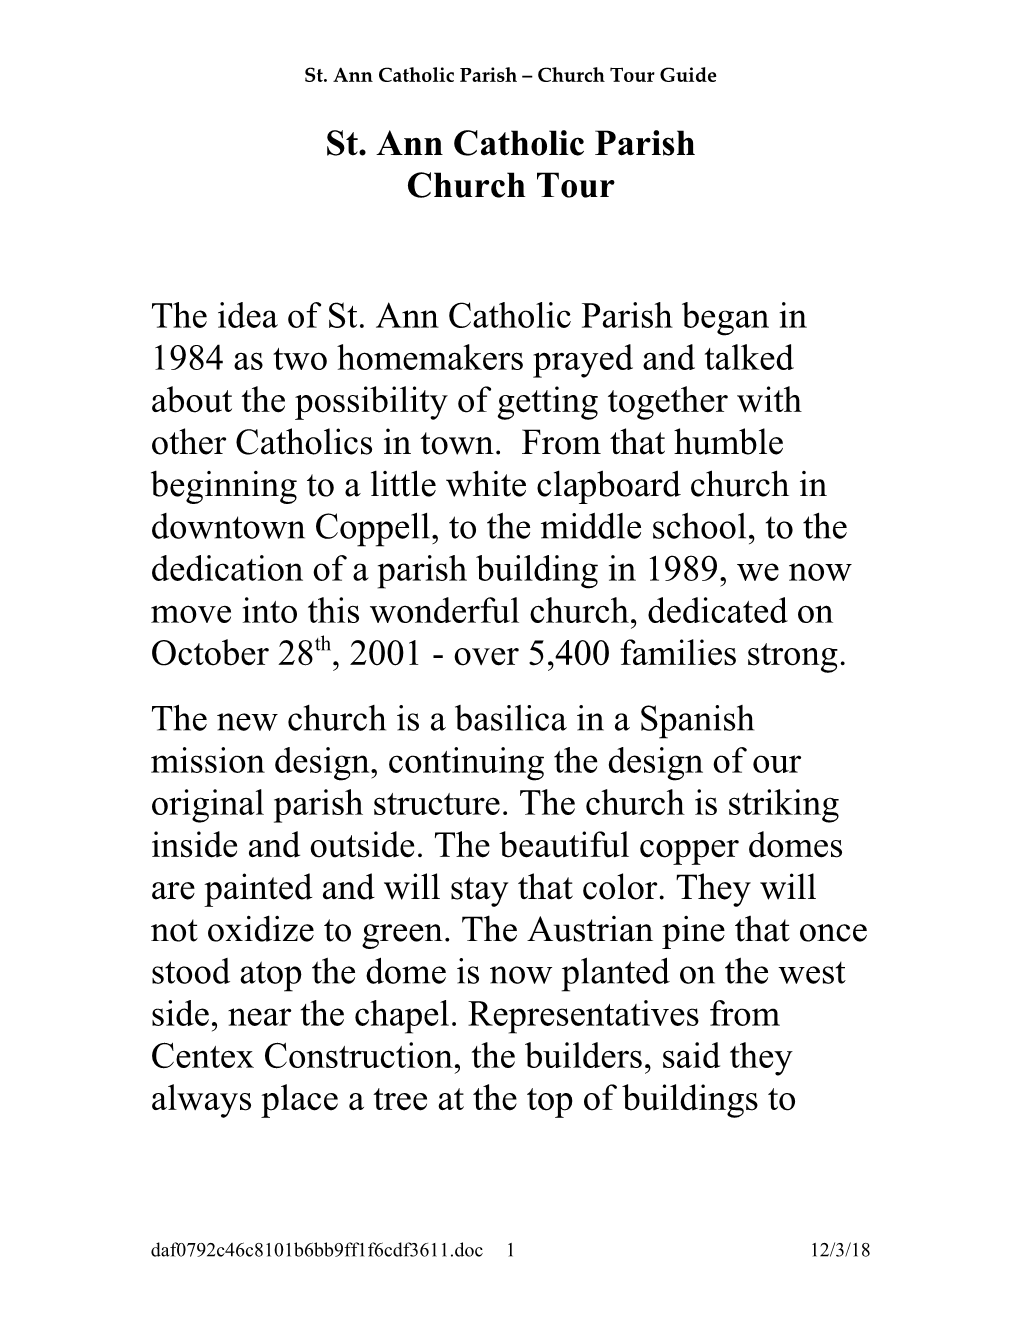 St. Ann Catholic Parish Church Tour Guide